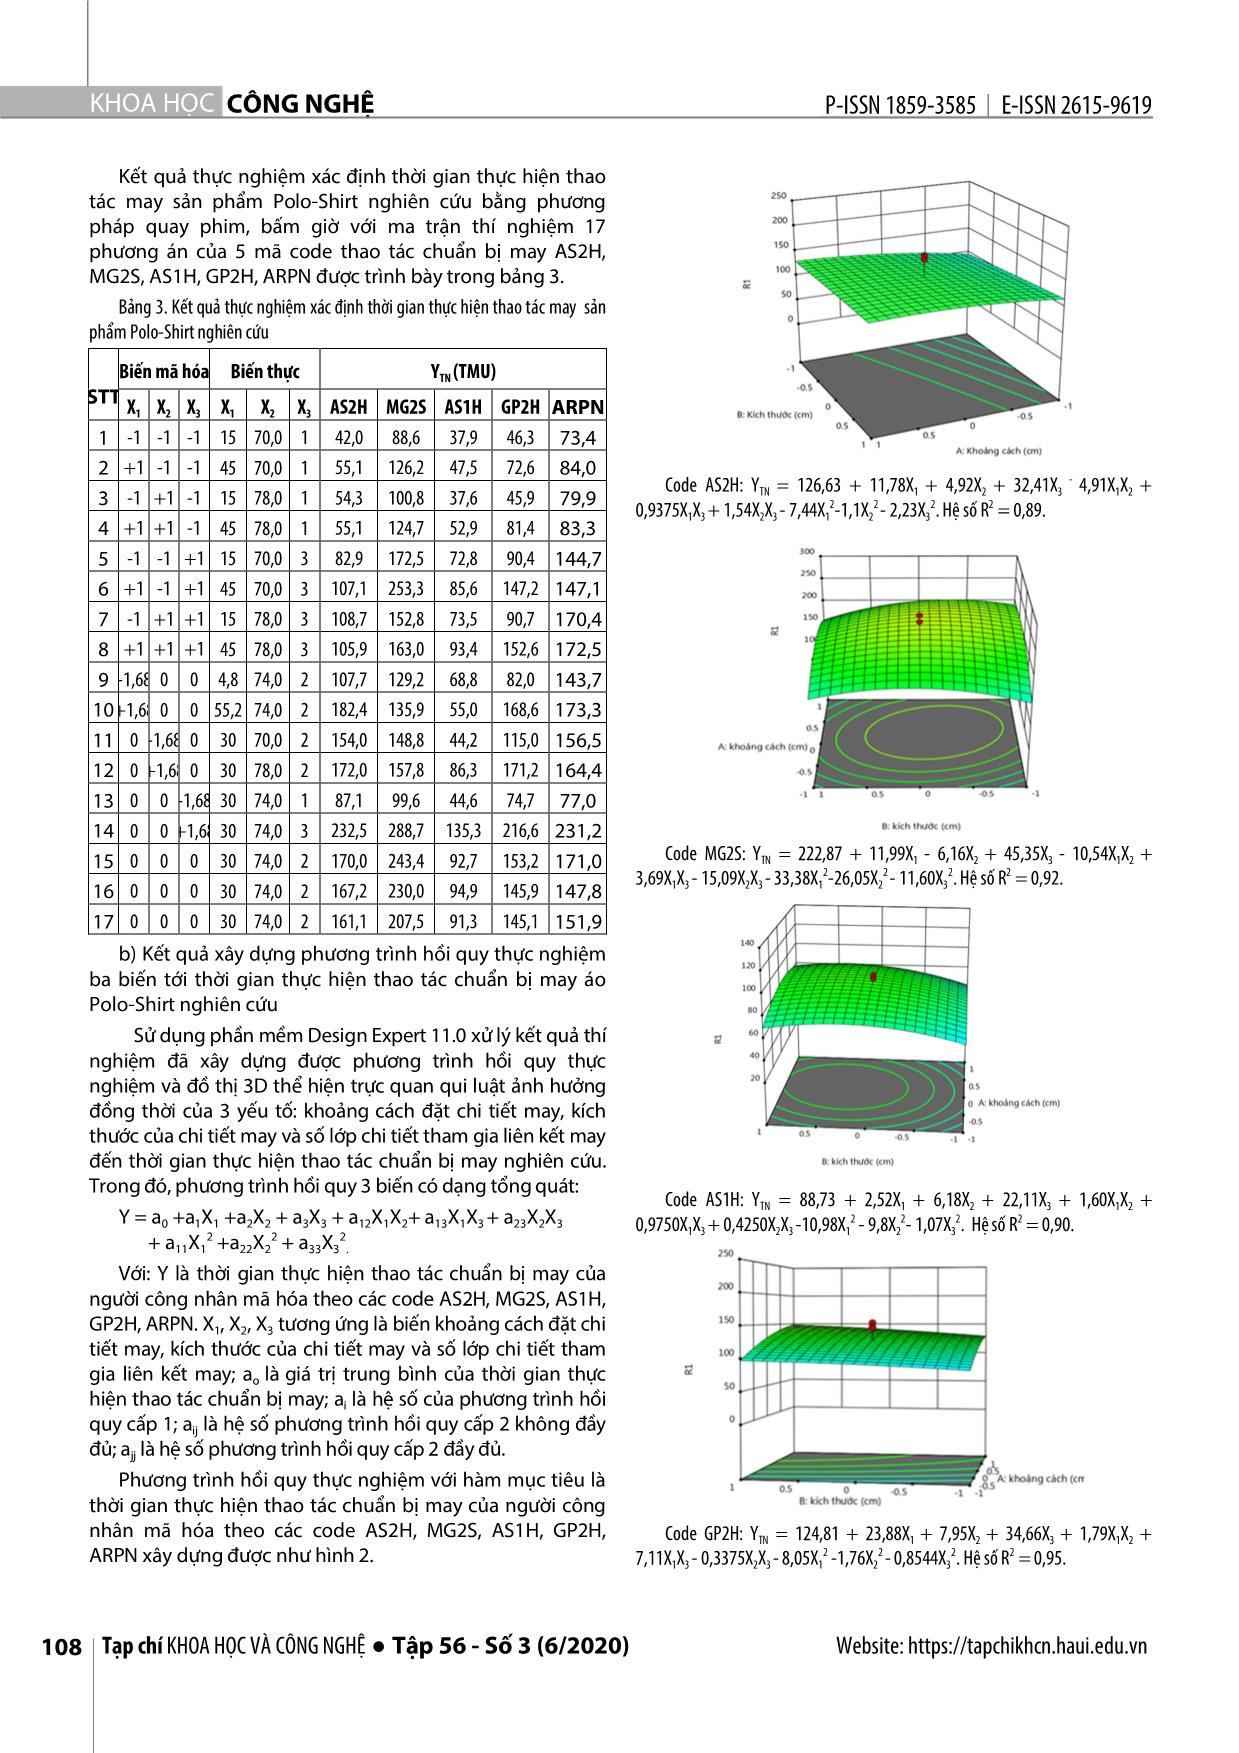 Nghiên cứu phân tích qui trình thao tác và tối ưu hóa thời gian thực hiện thao tác may sản phẩm từ vải dệt kim trang 4